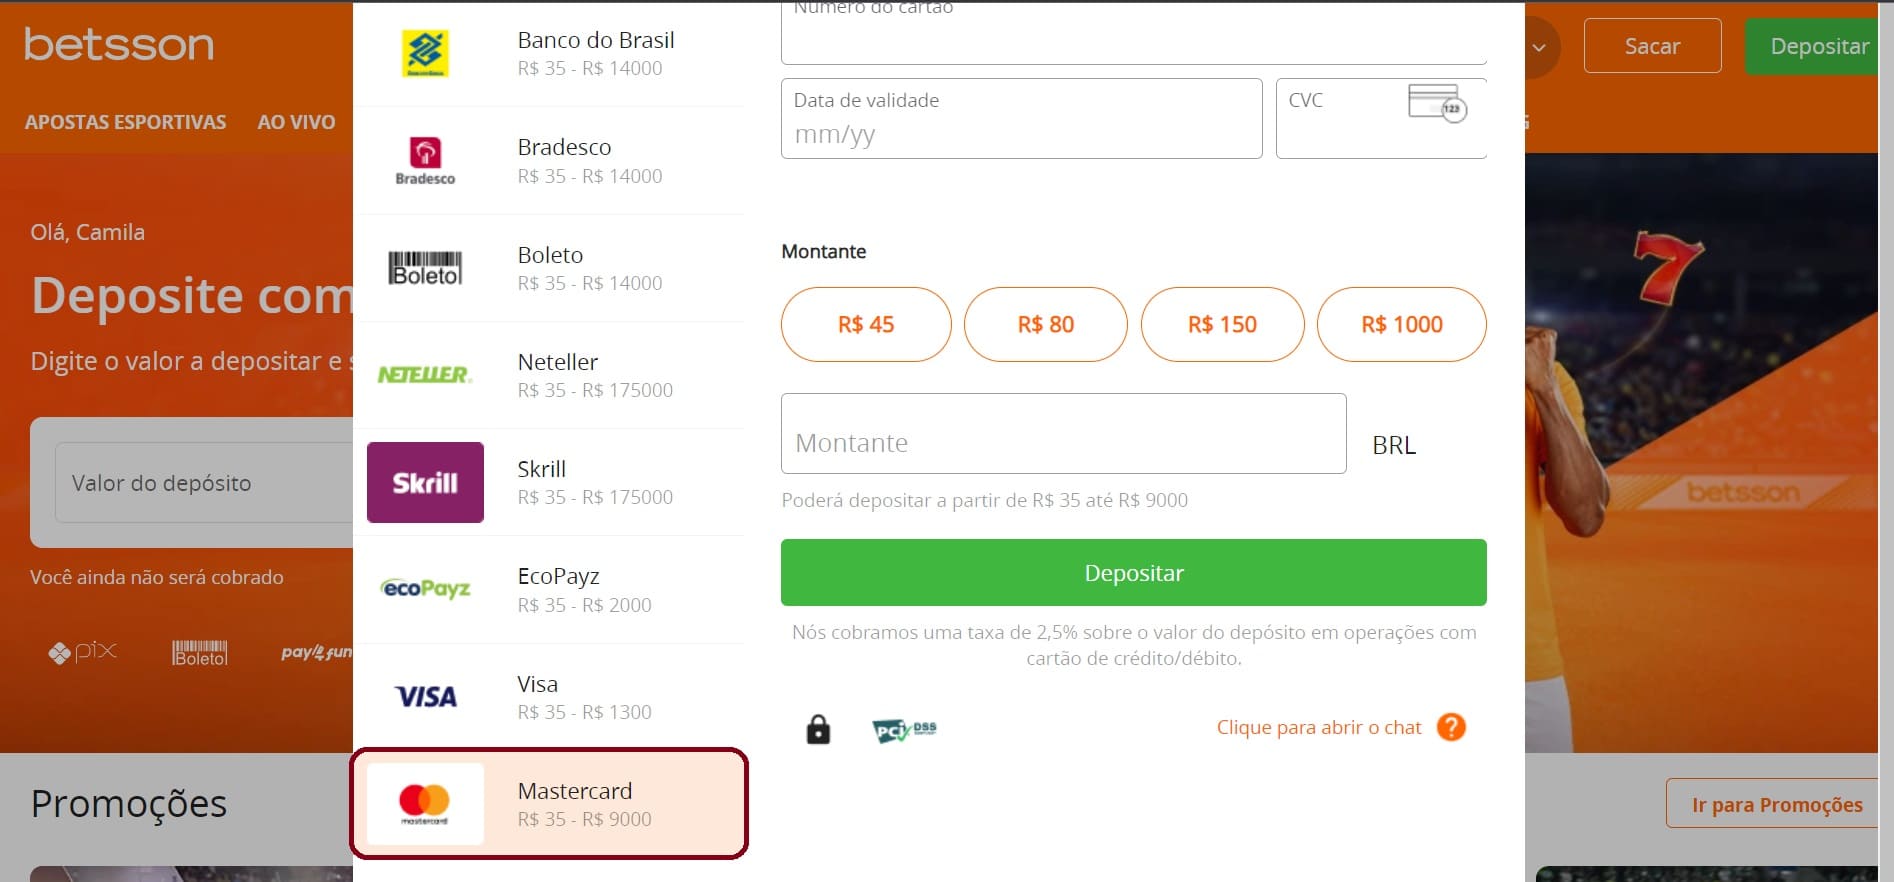 Escolhendo Mastercard para depósito em cassino online